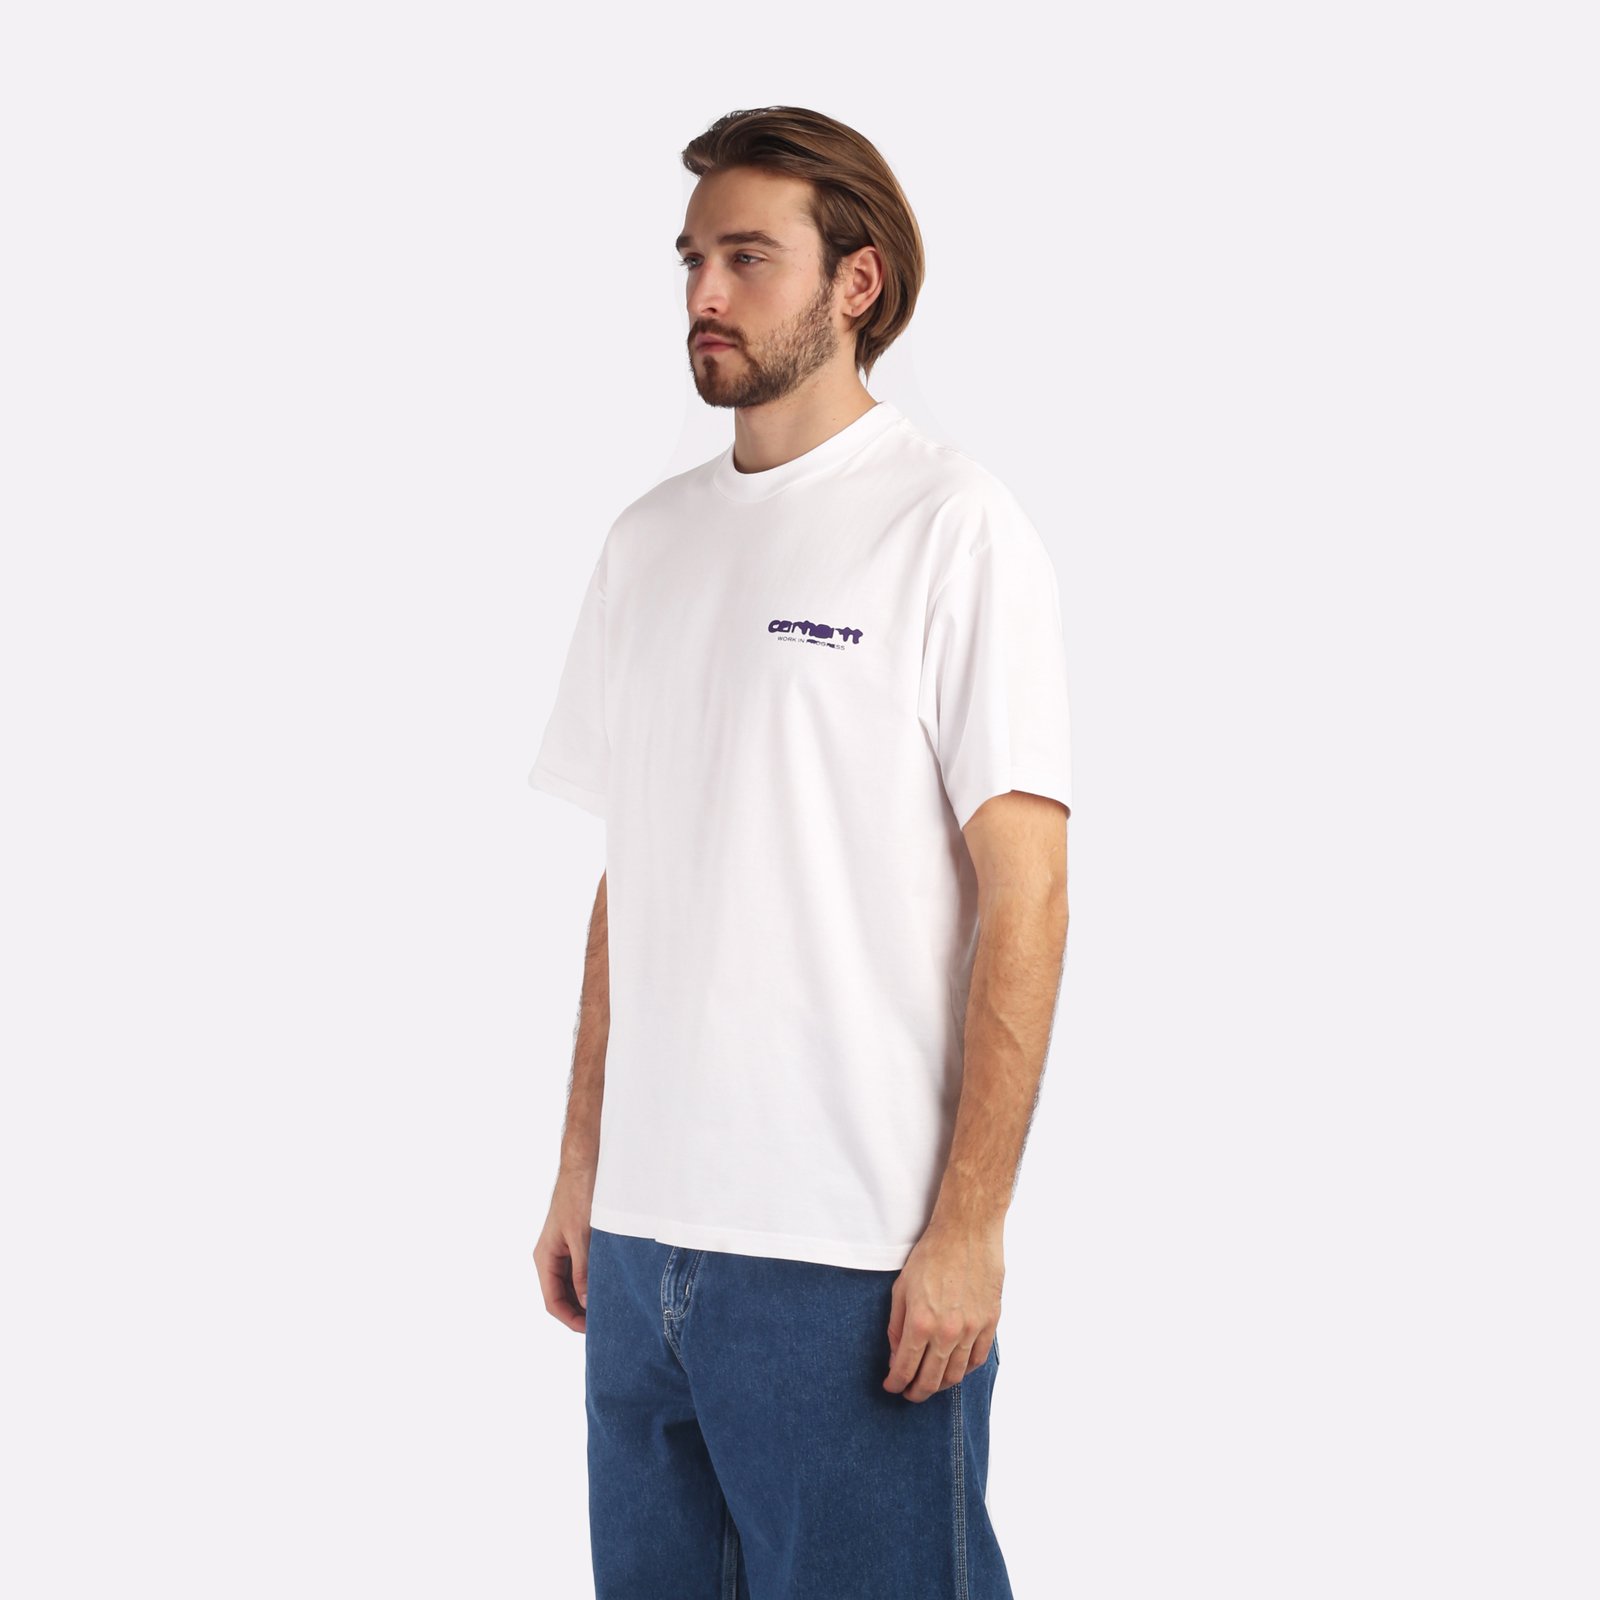 мужская футболка Carhartt WIP S/S Ink Bleed T-Shirt  (I032878-white/tyrian)  - цена, описание, фото 3